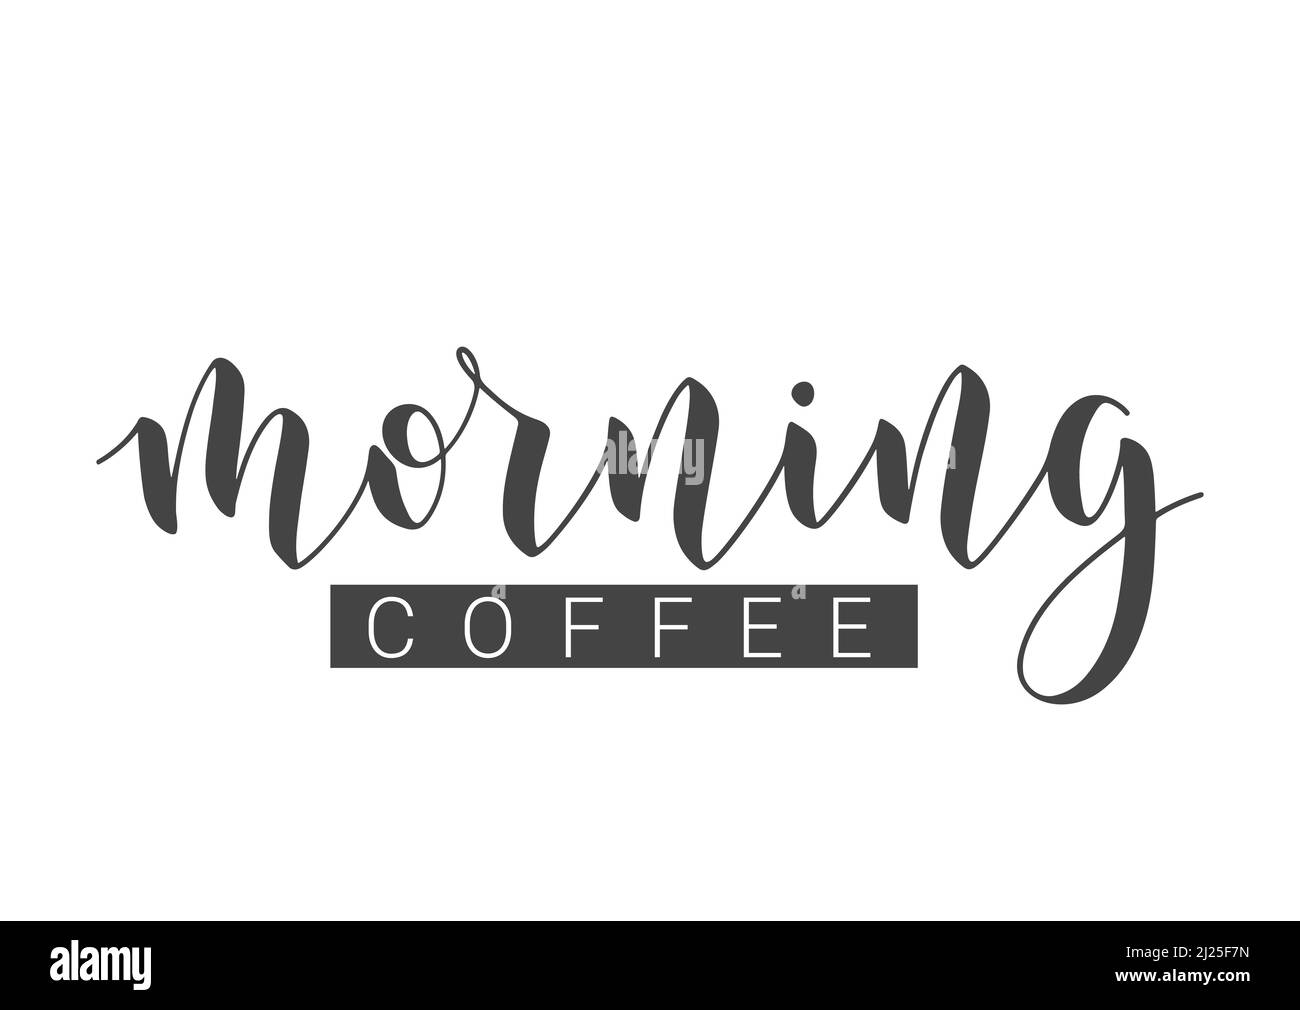 Illustrazione dello stock vettoriale. Scritta a mano del caffè del mattino. Modello per striscioni, cartoline, poster, stampa, adesivi o prodotti Web. Illustrazione Vettoriale